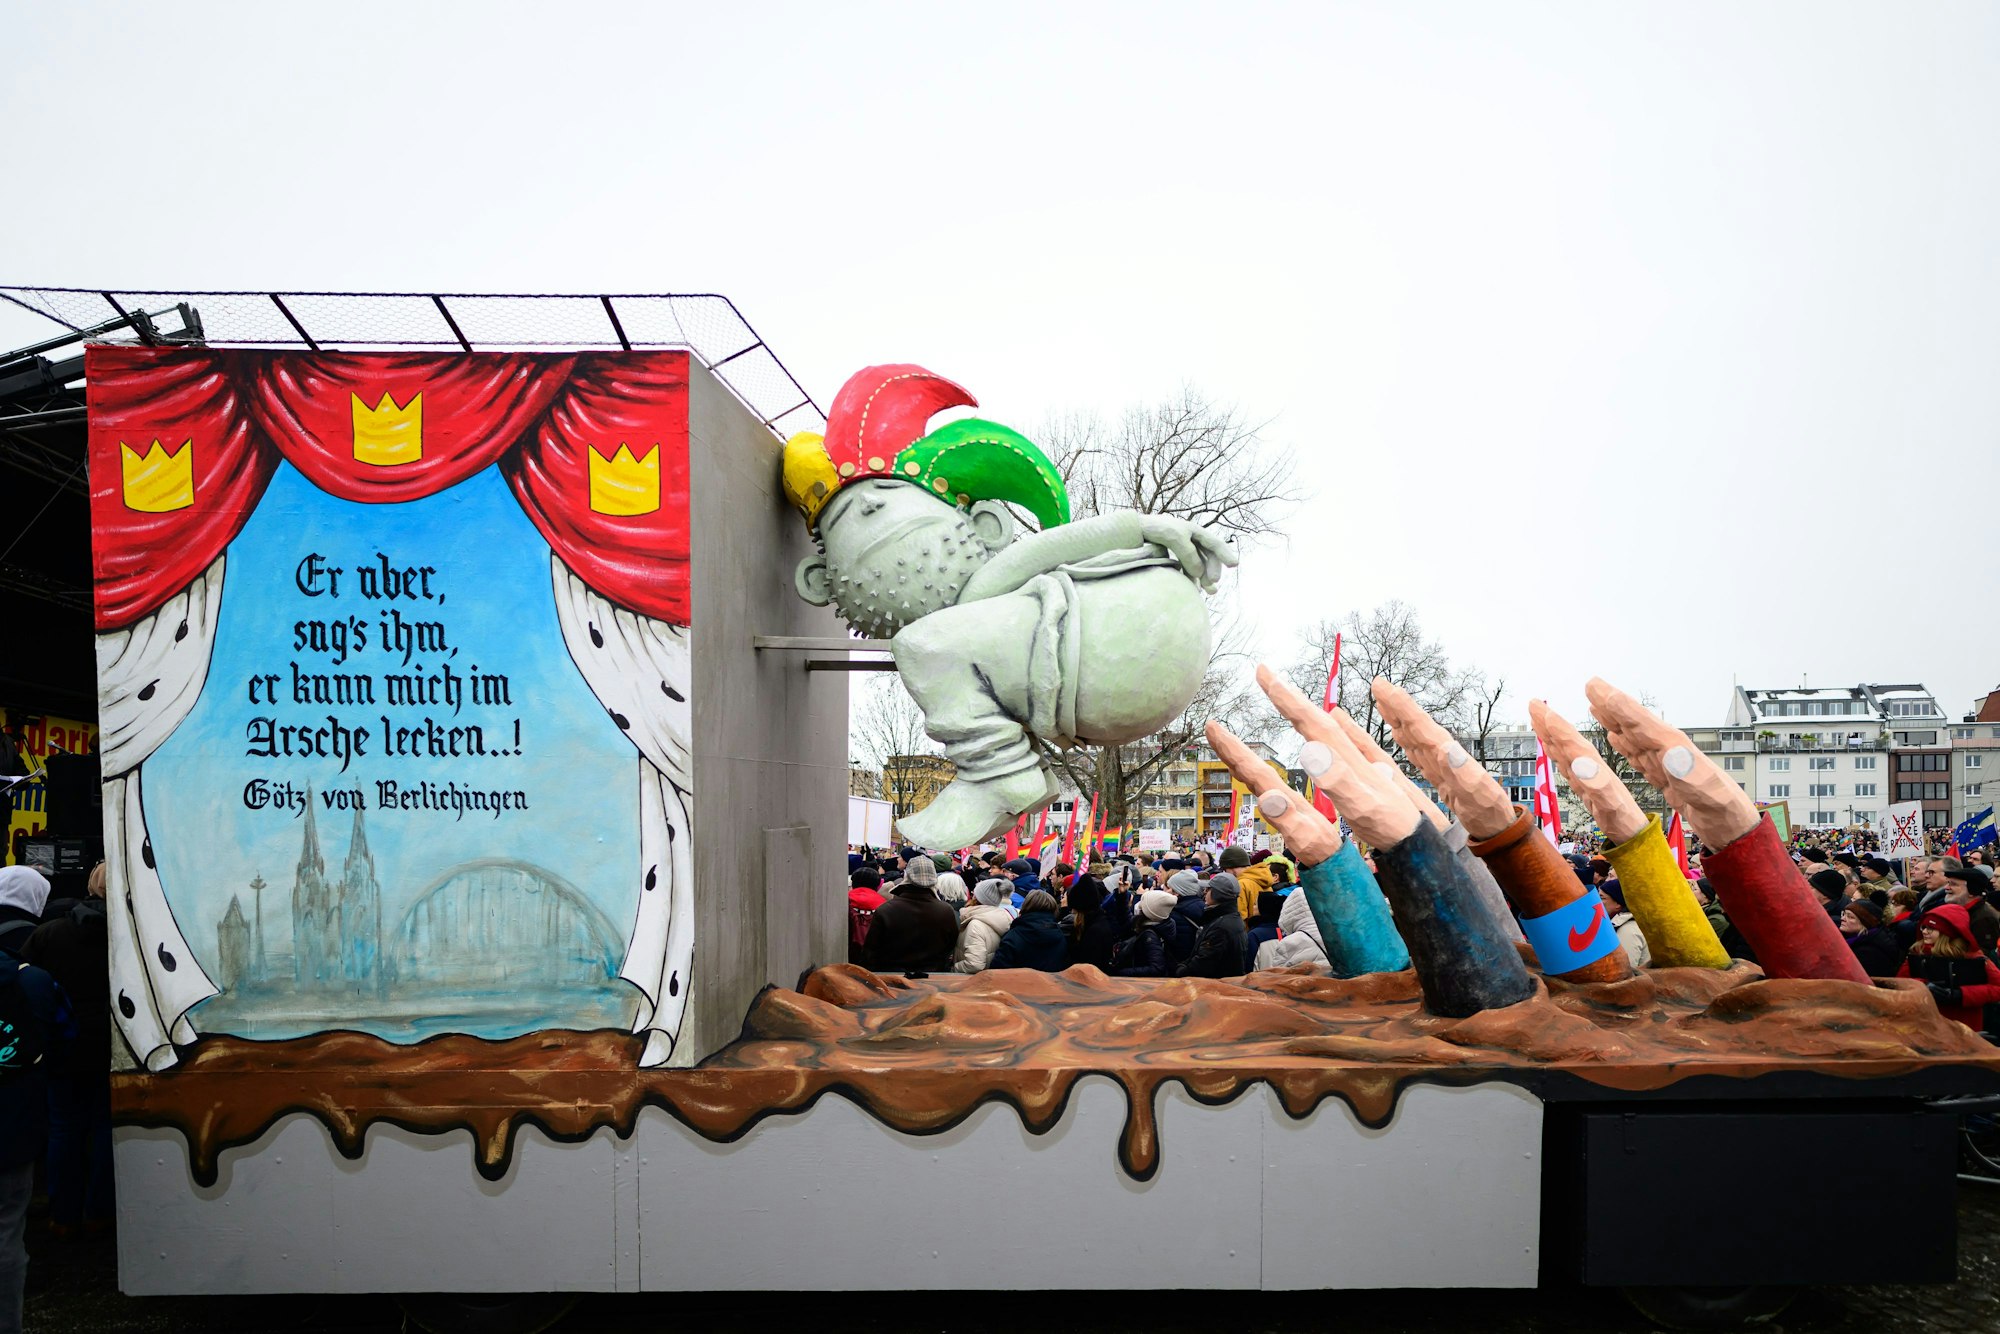 Bei der Demonstration gegen Rechts auf der Deutzer Werft präsentiert das Festkomitee Kölner Karneval einen Motivwagen aus dem Rosenmontagszug mit dem berühmten Götz-von-Berlichingen-Zitat.